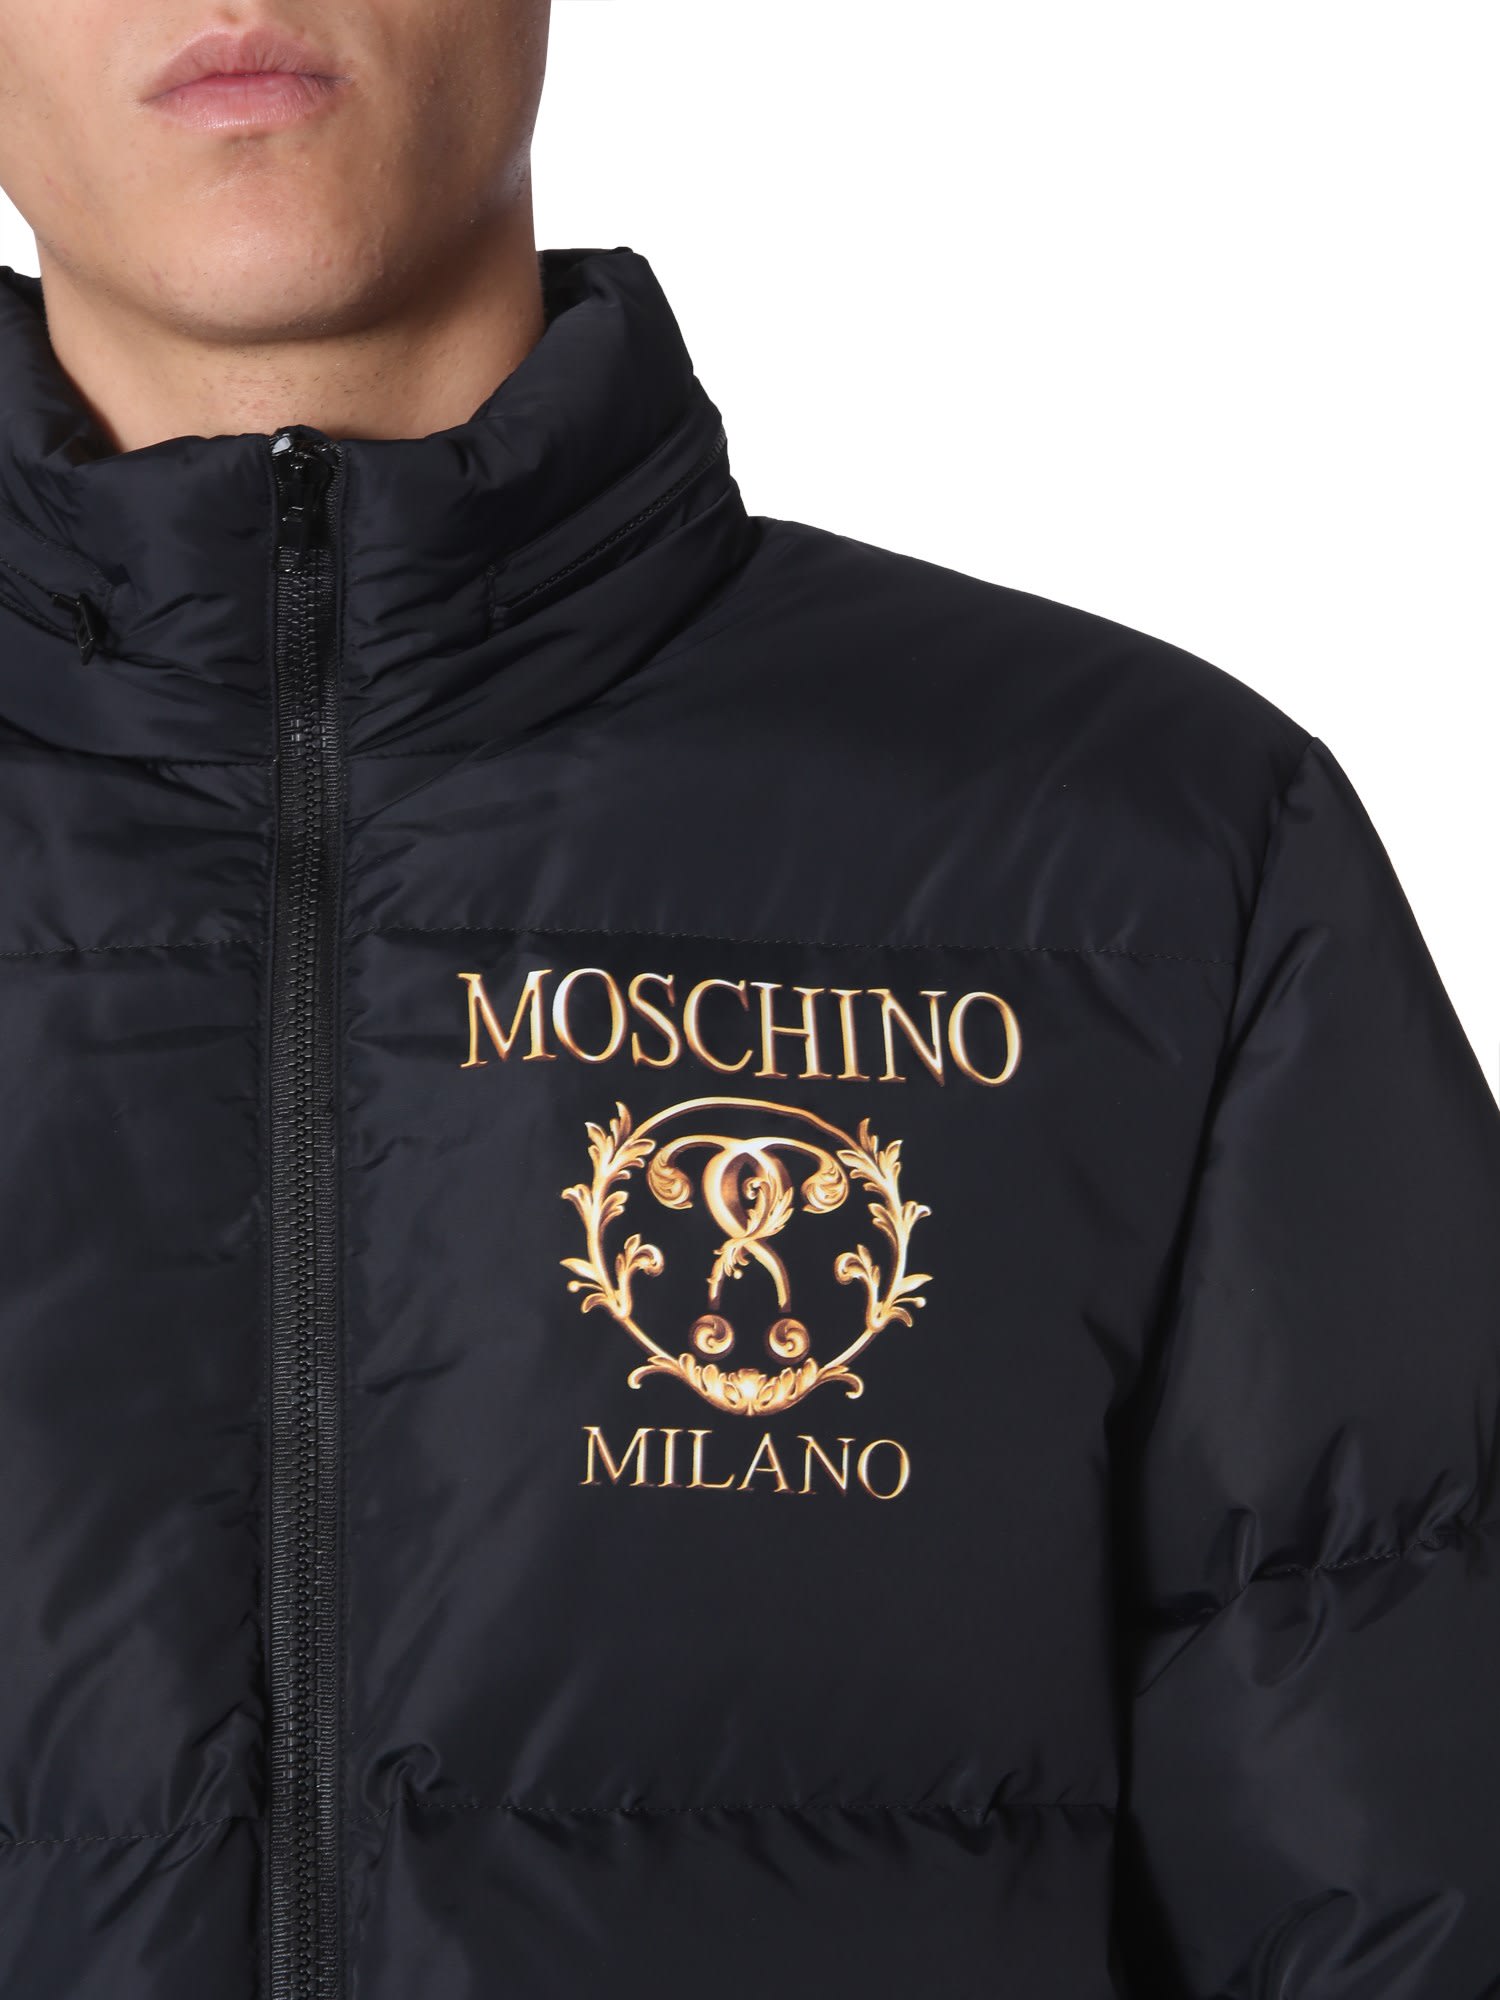 moschino milano jacket